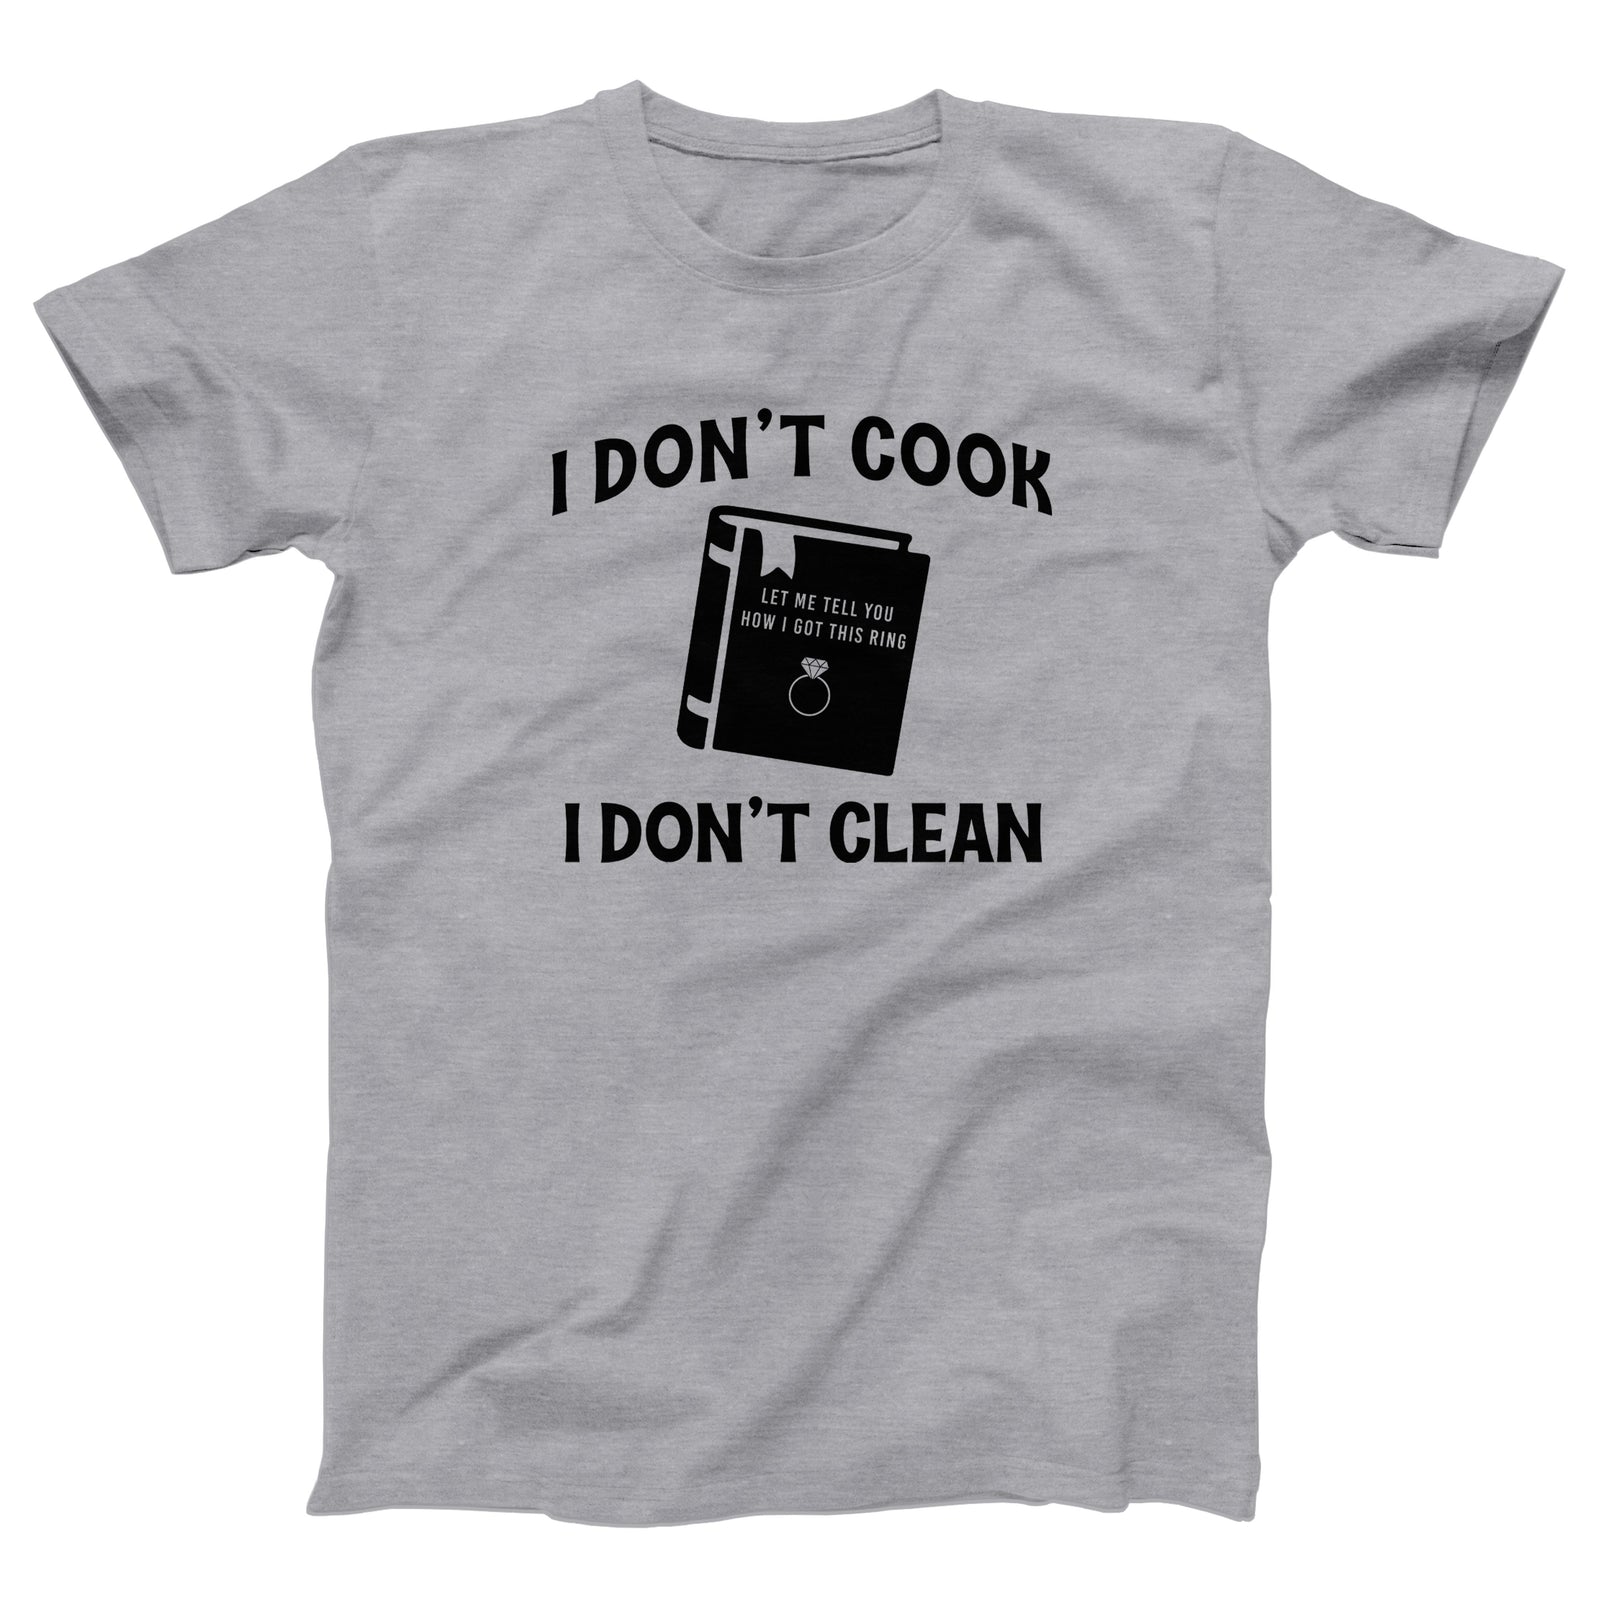 //cdn.shopify.com/s/files/1/0274/2488/2766/products/i-dont-cook-i-dont-clean-menunisex-t-shirt-106149_5000x.jpg?v=1618252011 5000w,
    //cdn.shopify.com/s/files/1/0274/2488/2766/products/i-dont-cook-i-dont-clean-menunisex-t-shirt-106149_4500x.jpg?v=1618252011 4500w,
    //cdn.shopify.com/s/files/1/0274/2488/2766/products/i-dont-cook-i-dont-clean-menunisex-t-shirt-106149_4000x.jpg?v=1618252011 4000w,
    //cdn.shopify.com/s/files/1/0274/2488/2766/products/i-dont-cook-i-dont-clean-menunisex-t-shirt-106149_3500x.jpg?v=1618252011 3500w,
    //cdn.shopify.com/s/files/1/0274/2488/2766/products/i-dont-cook-i-dont-clean-menunisex-t-shirt-106149_3000x.jpg?v=1618252011 3000w,
    //cdn.shopify.com/s/files/1/0274/2488/2766/products/i-dont-cook-i-dont-clean-menunisex-t-shirt-106149_2500x.jpg?v=1618252011 2500w,
    //cdn.shopify.com/s/files/1/0274/2488/2766/products/i-dont-cook-i-dont-clean-menunisex-t-shirt-106149_2000x.jpg?v=1618252011 2000w,
    //cdn.shopify.com/s/files/1/0274/2488/2766/products/i-dont-cook-i-dont-clean-menunisex-t-shirt-106149_1800x.jpg?v=1618252011 1800w,
    //cdn.shopify.com/s/files/1/0274/2488/2766/products/i-dont-cook-i-dont-clean-menunisex-t-shirt-106149_1600x.jpg?v=1618252011 1600w,
    //cdn.shopify.com/s/files/1/0274/2488/2766/products/i-dont-cook-i-dont-clean-menunisex-t-shirt-106149_1400x.jpg?v=1618252011 1400w,
    //cdn.shopify.com/s/files/1/0274/2488/2766/products/i-dont-cook-i-dont-clean-menunisex-t-shirt-106149_1200x.jpg?v=1618252011 1200w,
    //cdn.shopify.com/s/files/1/0274/2488/2766/products/i-dont-cook-i-dont-clean-menunisex-t-shirt-106149_1000x.jpg?v=1618252011 1000w,
    //cdn.shopify.com/s/files/1/0274/2488/2766/products/i-dont-cook-i-dont-clean-menunisex-t-shirt-106149_800x.jpg?v=1618252011 800w,
    //cdn.shopify.com/s/files/1/0274/2488/2766/products/i-dont-cook-i-dont-clean-menunisex-t-shirt-106149_600x.jpg?v=1618252011 600w,
    //cdn.shopify.com/s/files/1/0274/2488/2766/products/i-dont-cook-i-dont-clean-menunisex-t-shirt-106149_400x.jpg?v=1618252011 400w,
    //cdn.shopify.com/s/files/1/0274/2488/2766/products/i-dont-cook-i-dont-clean-menunisex-t-shirt-106149_200x.jpg?v=1618252011 200w